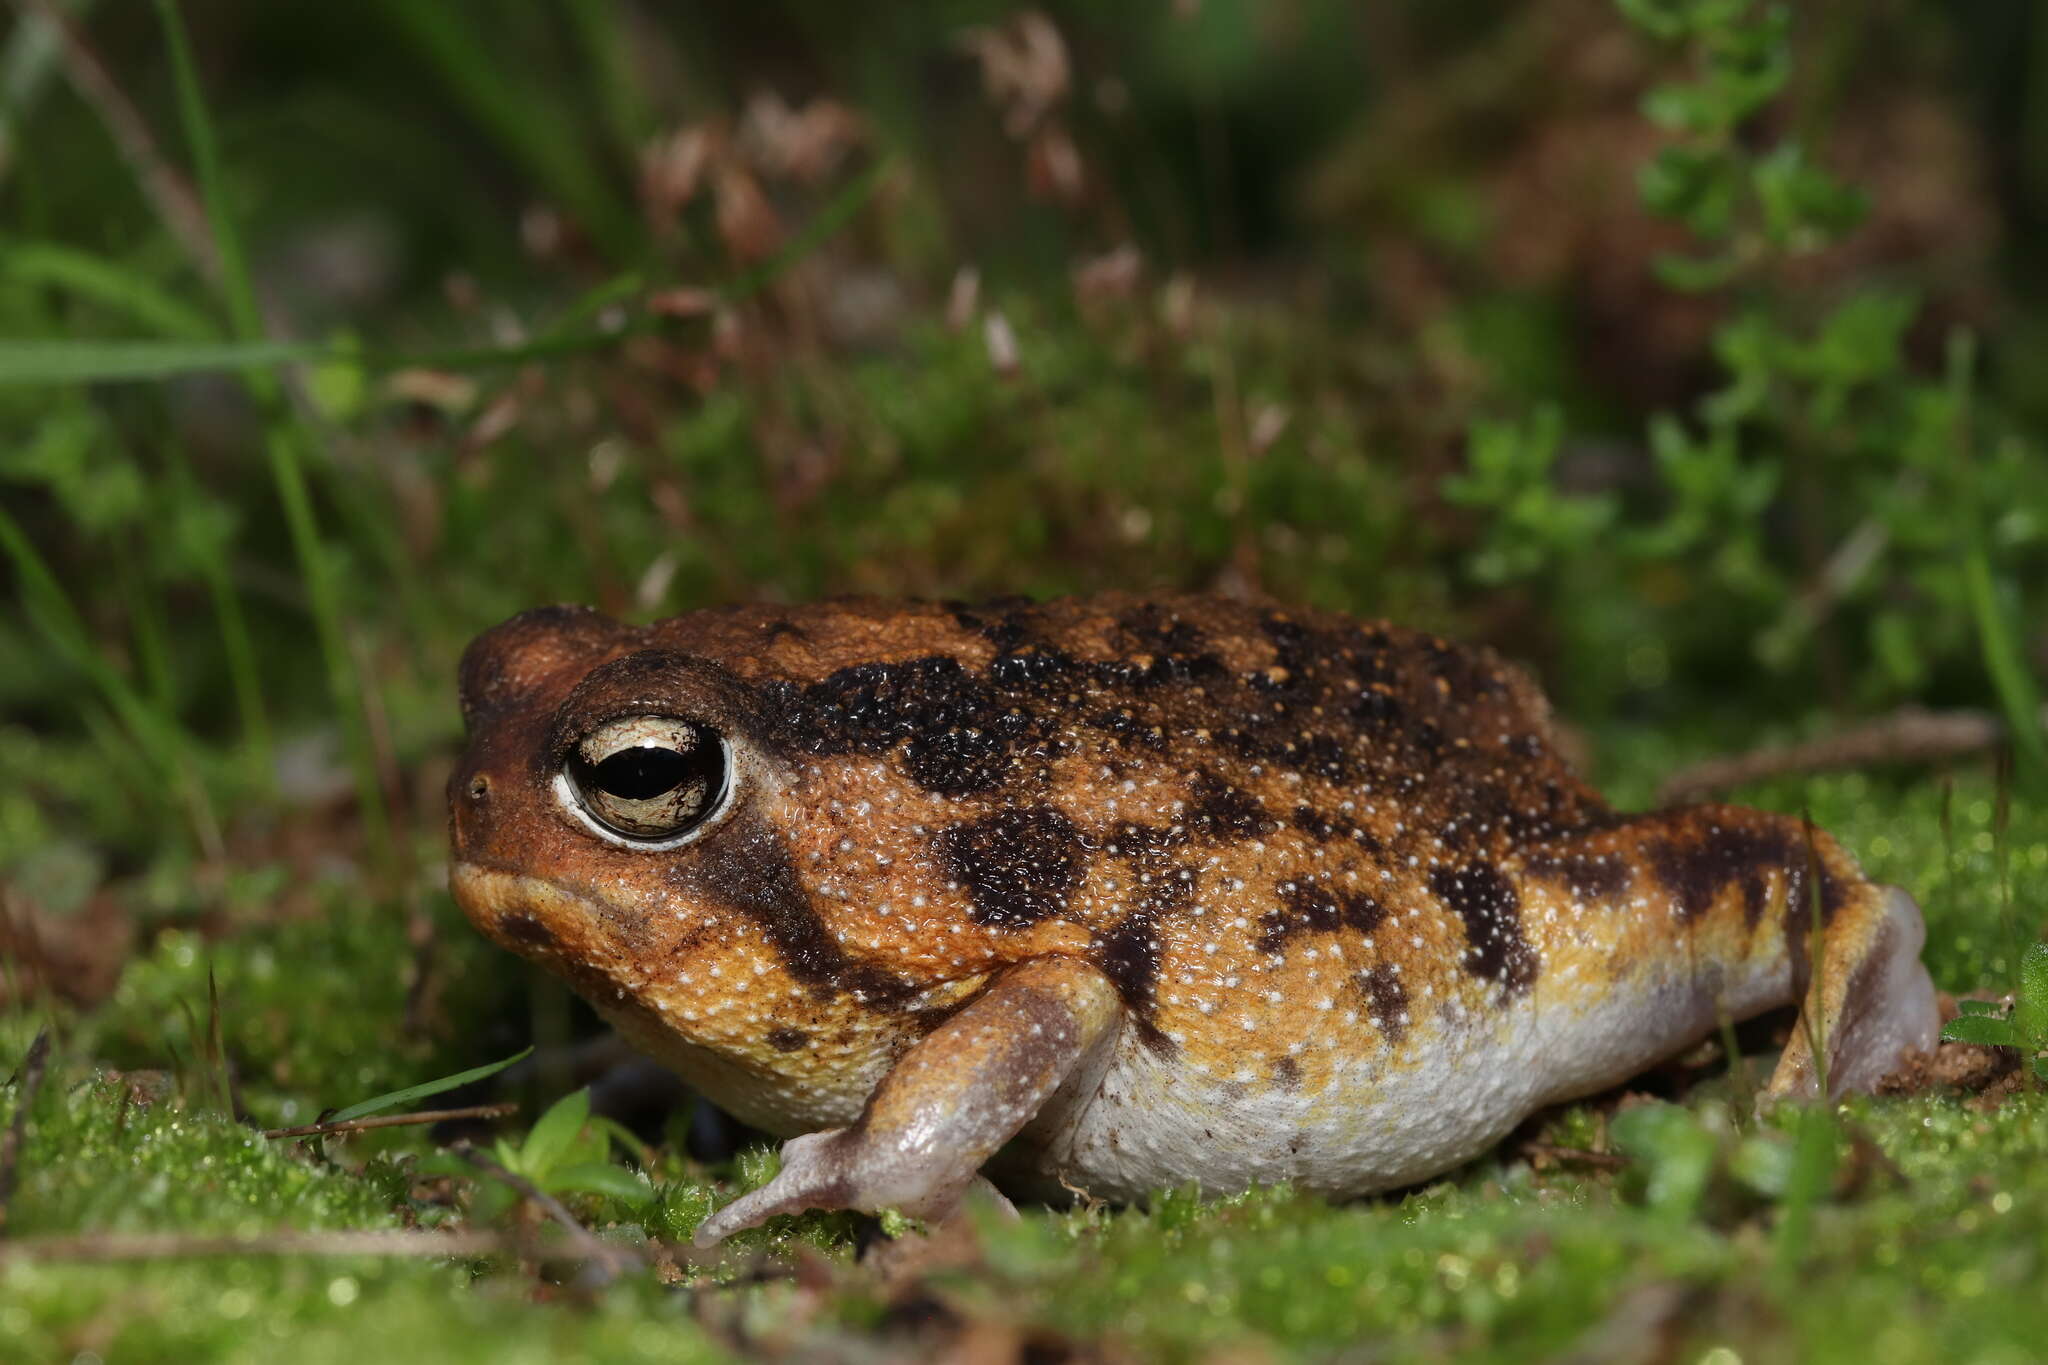 Image of Namaqua Rain Frog